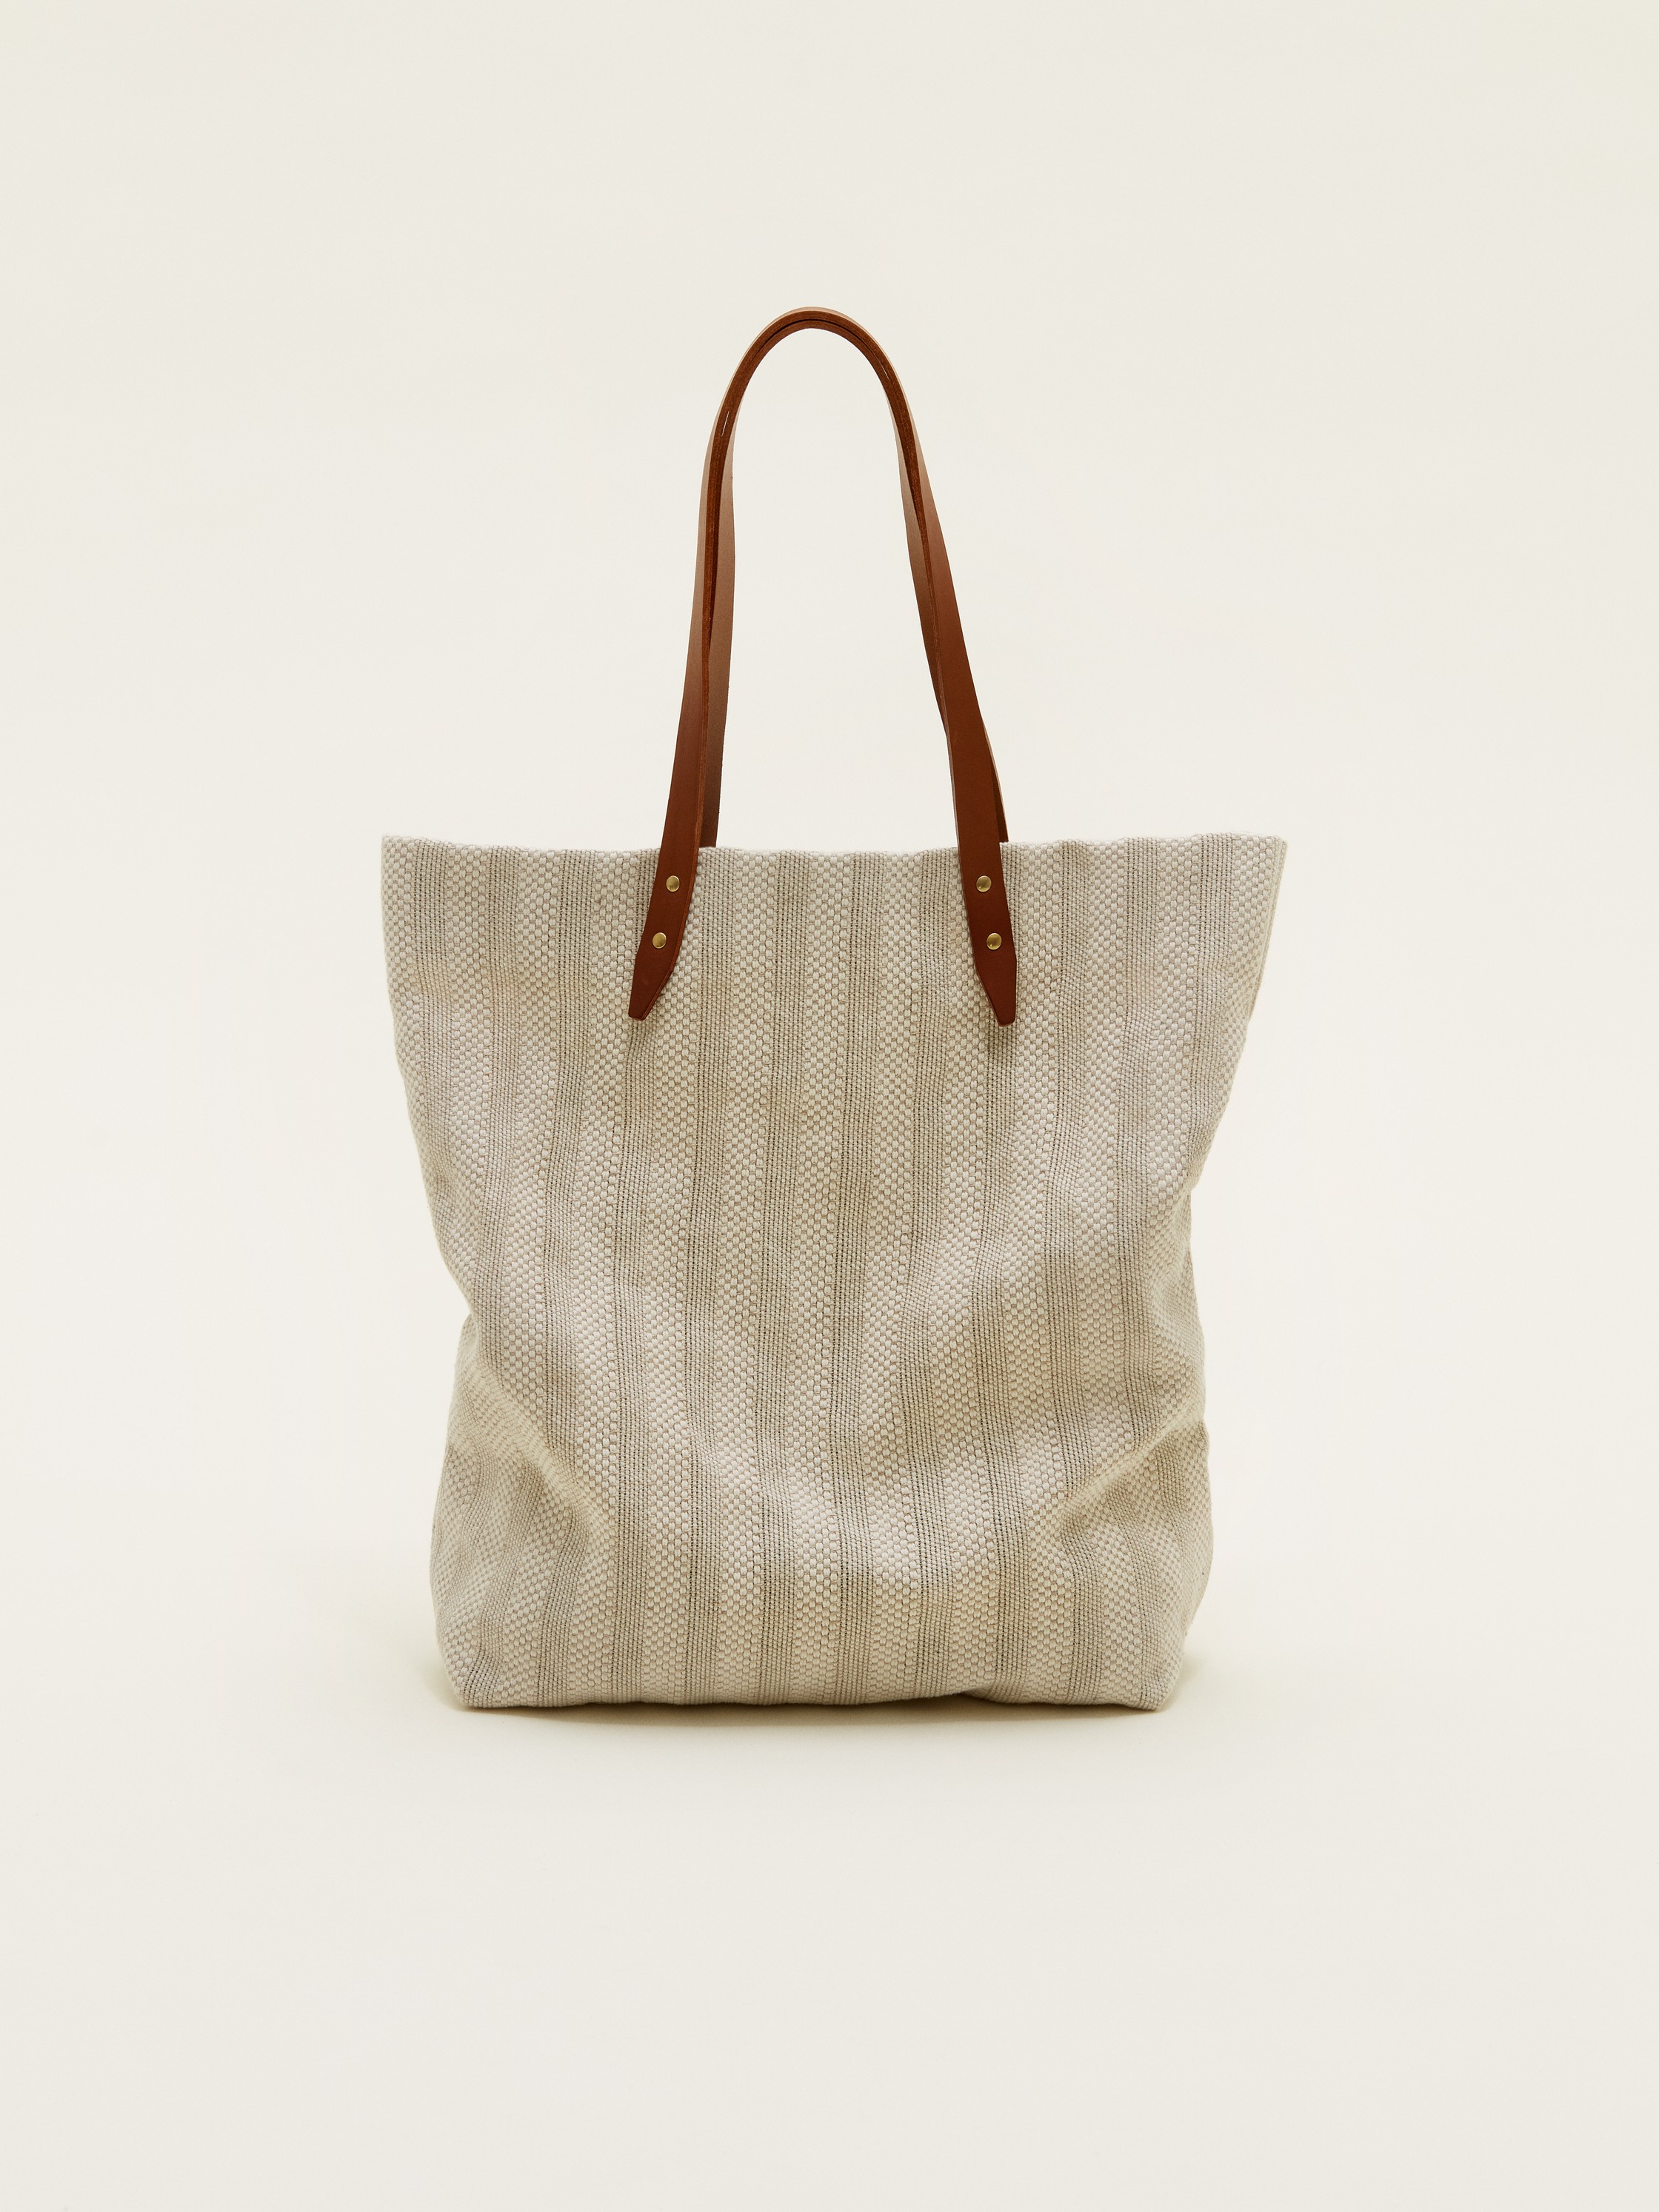 Tote bag - Steve Mono - Bags - Shop | Monocle